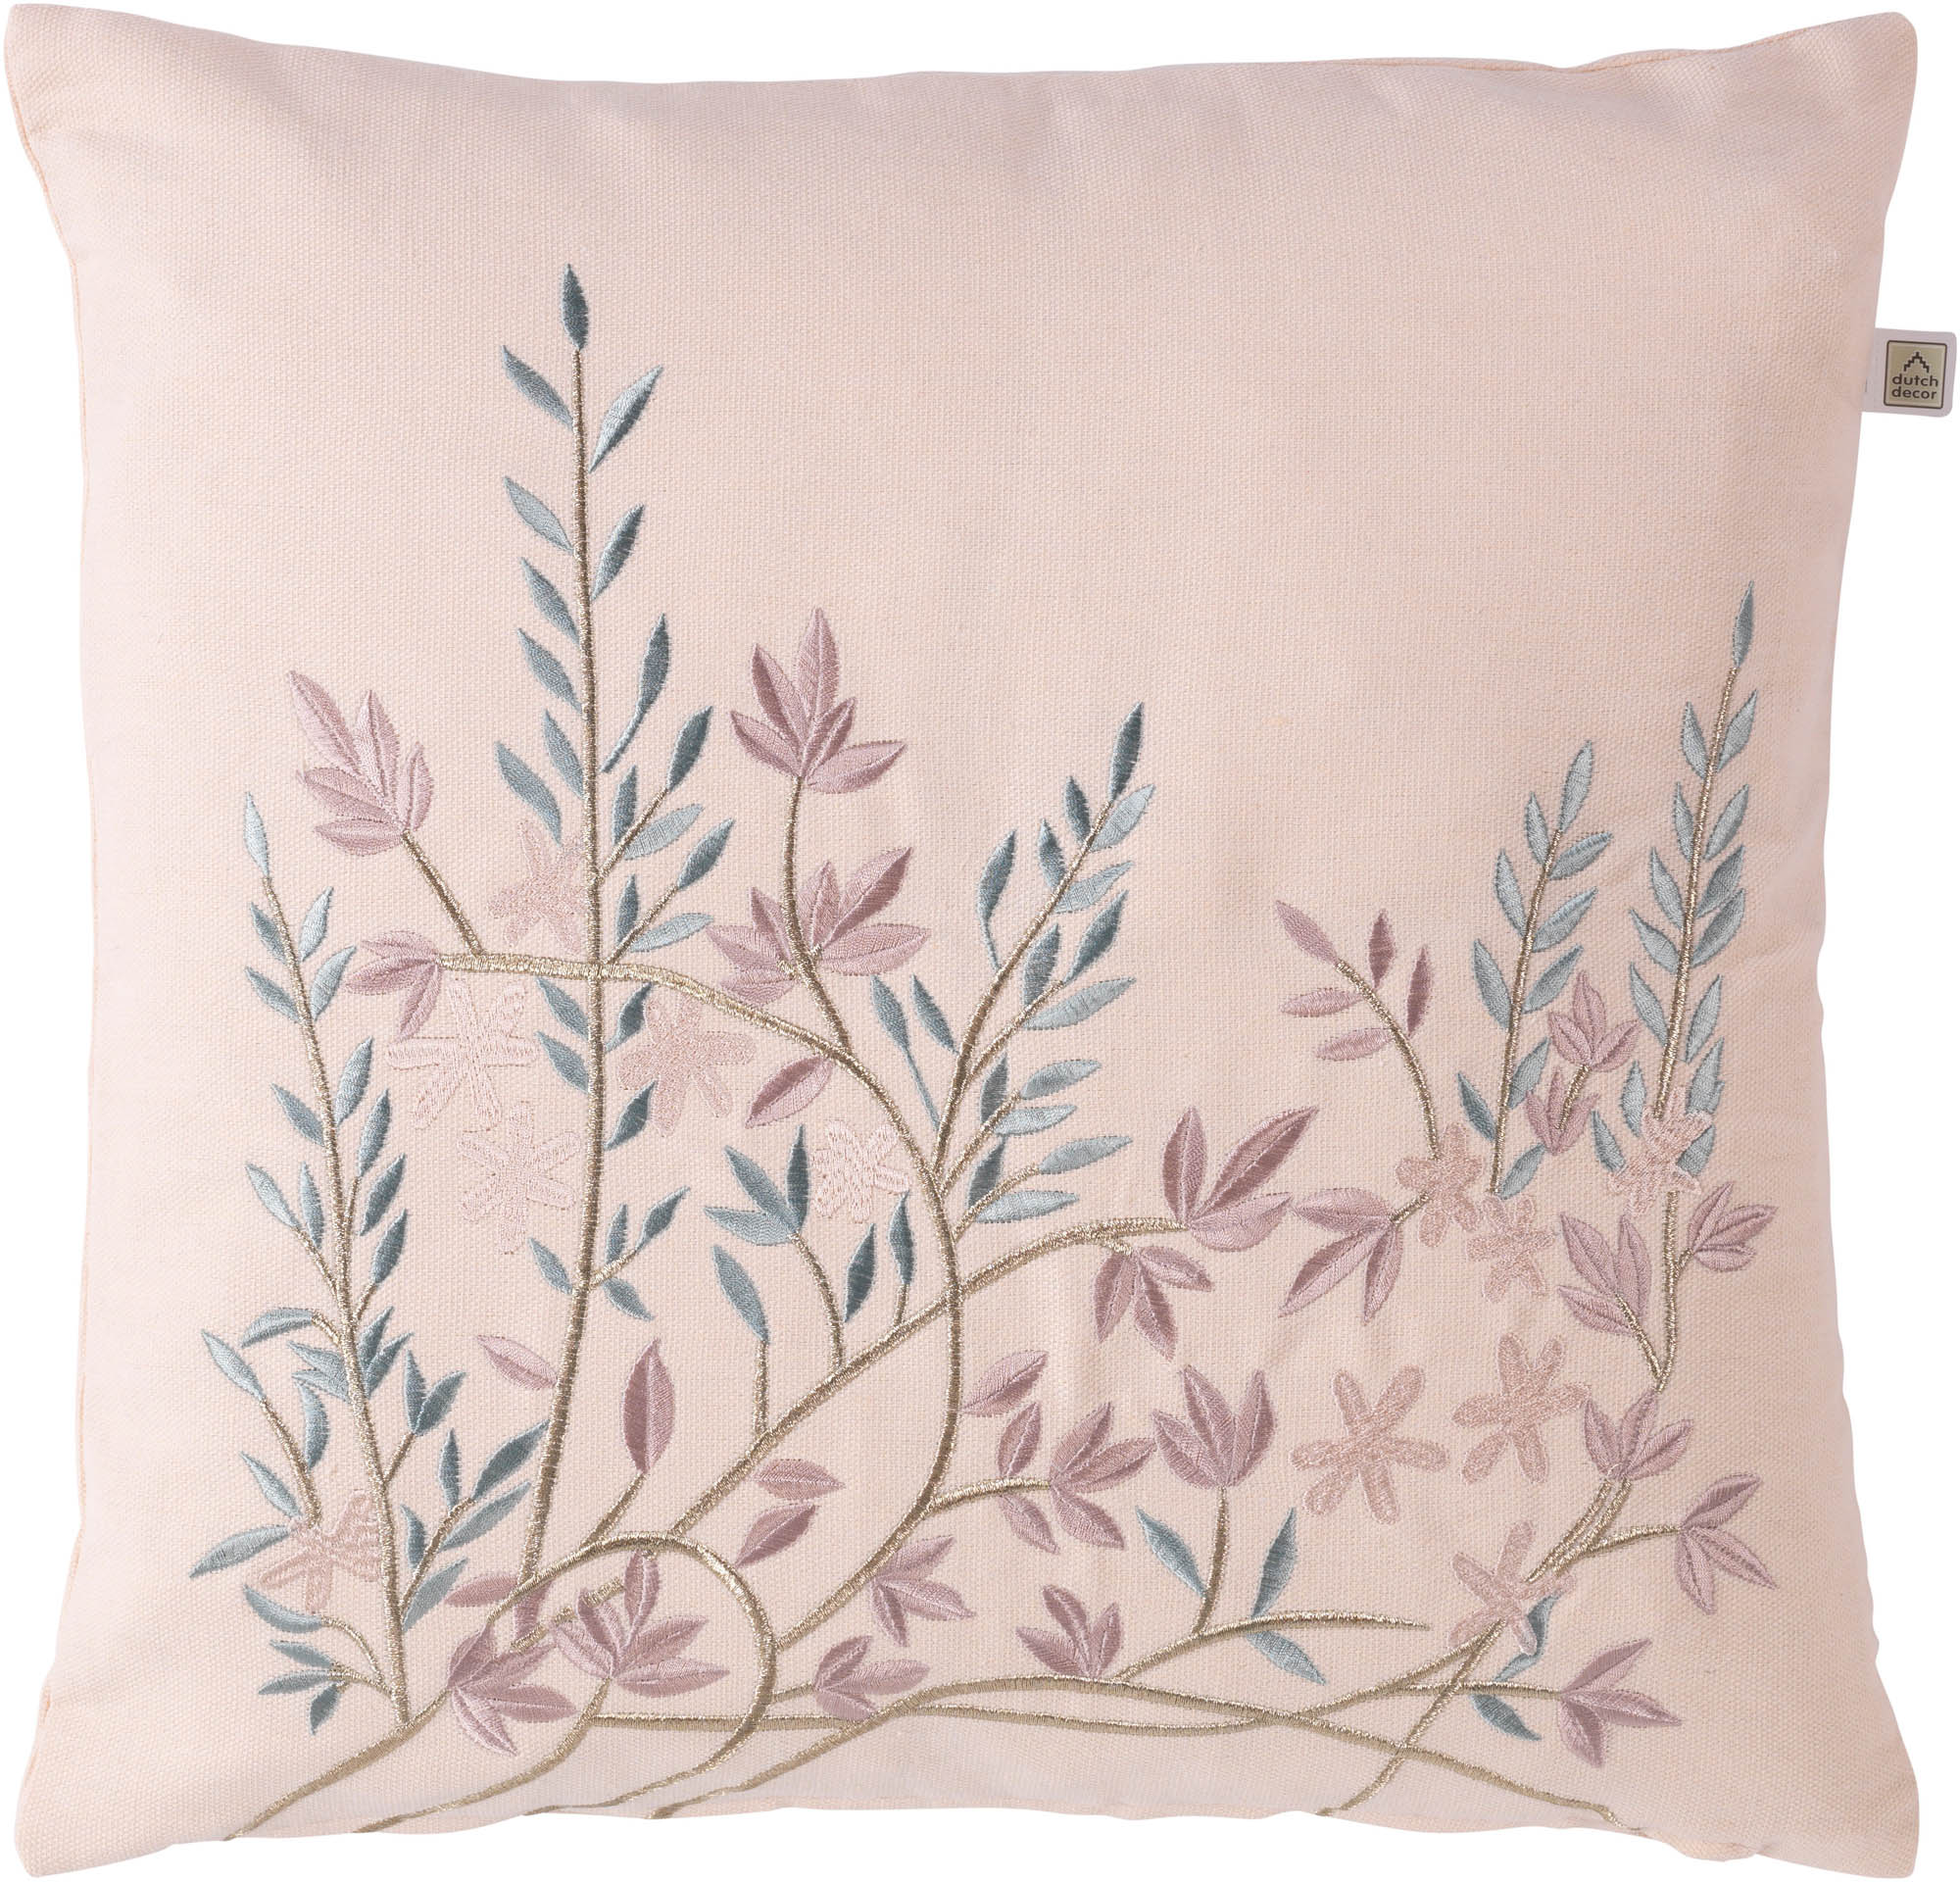 Schatting canvas pensioen STUVA - Kussenhoes geborduurd bloemen 45x45 cm - nude - roze - blauw -  pasteltinten | KUSSENHOES | KHSTUV45NUD